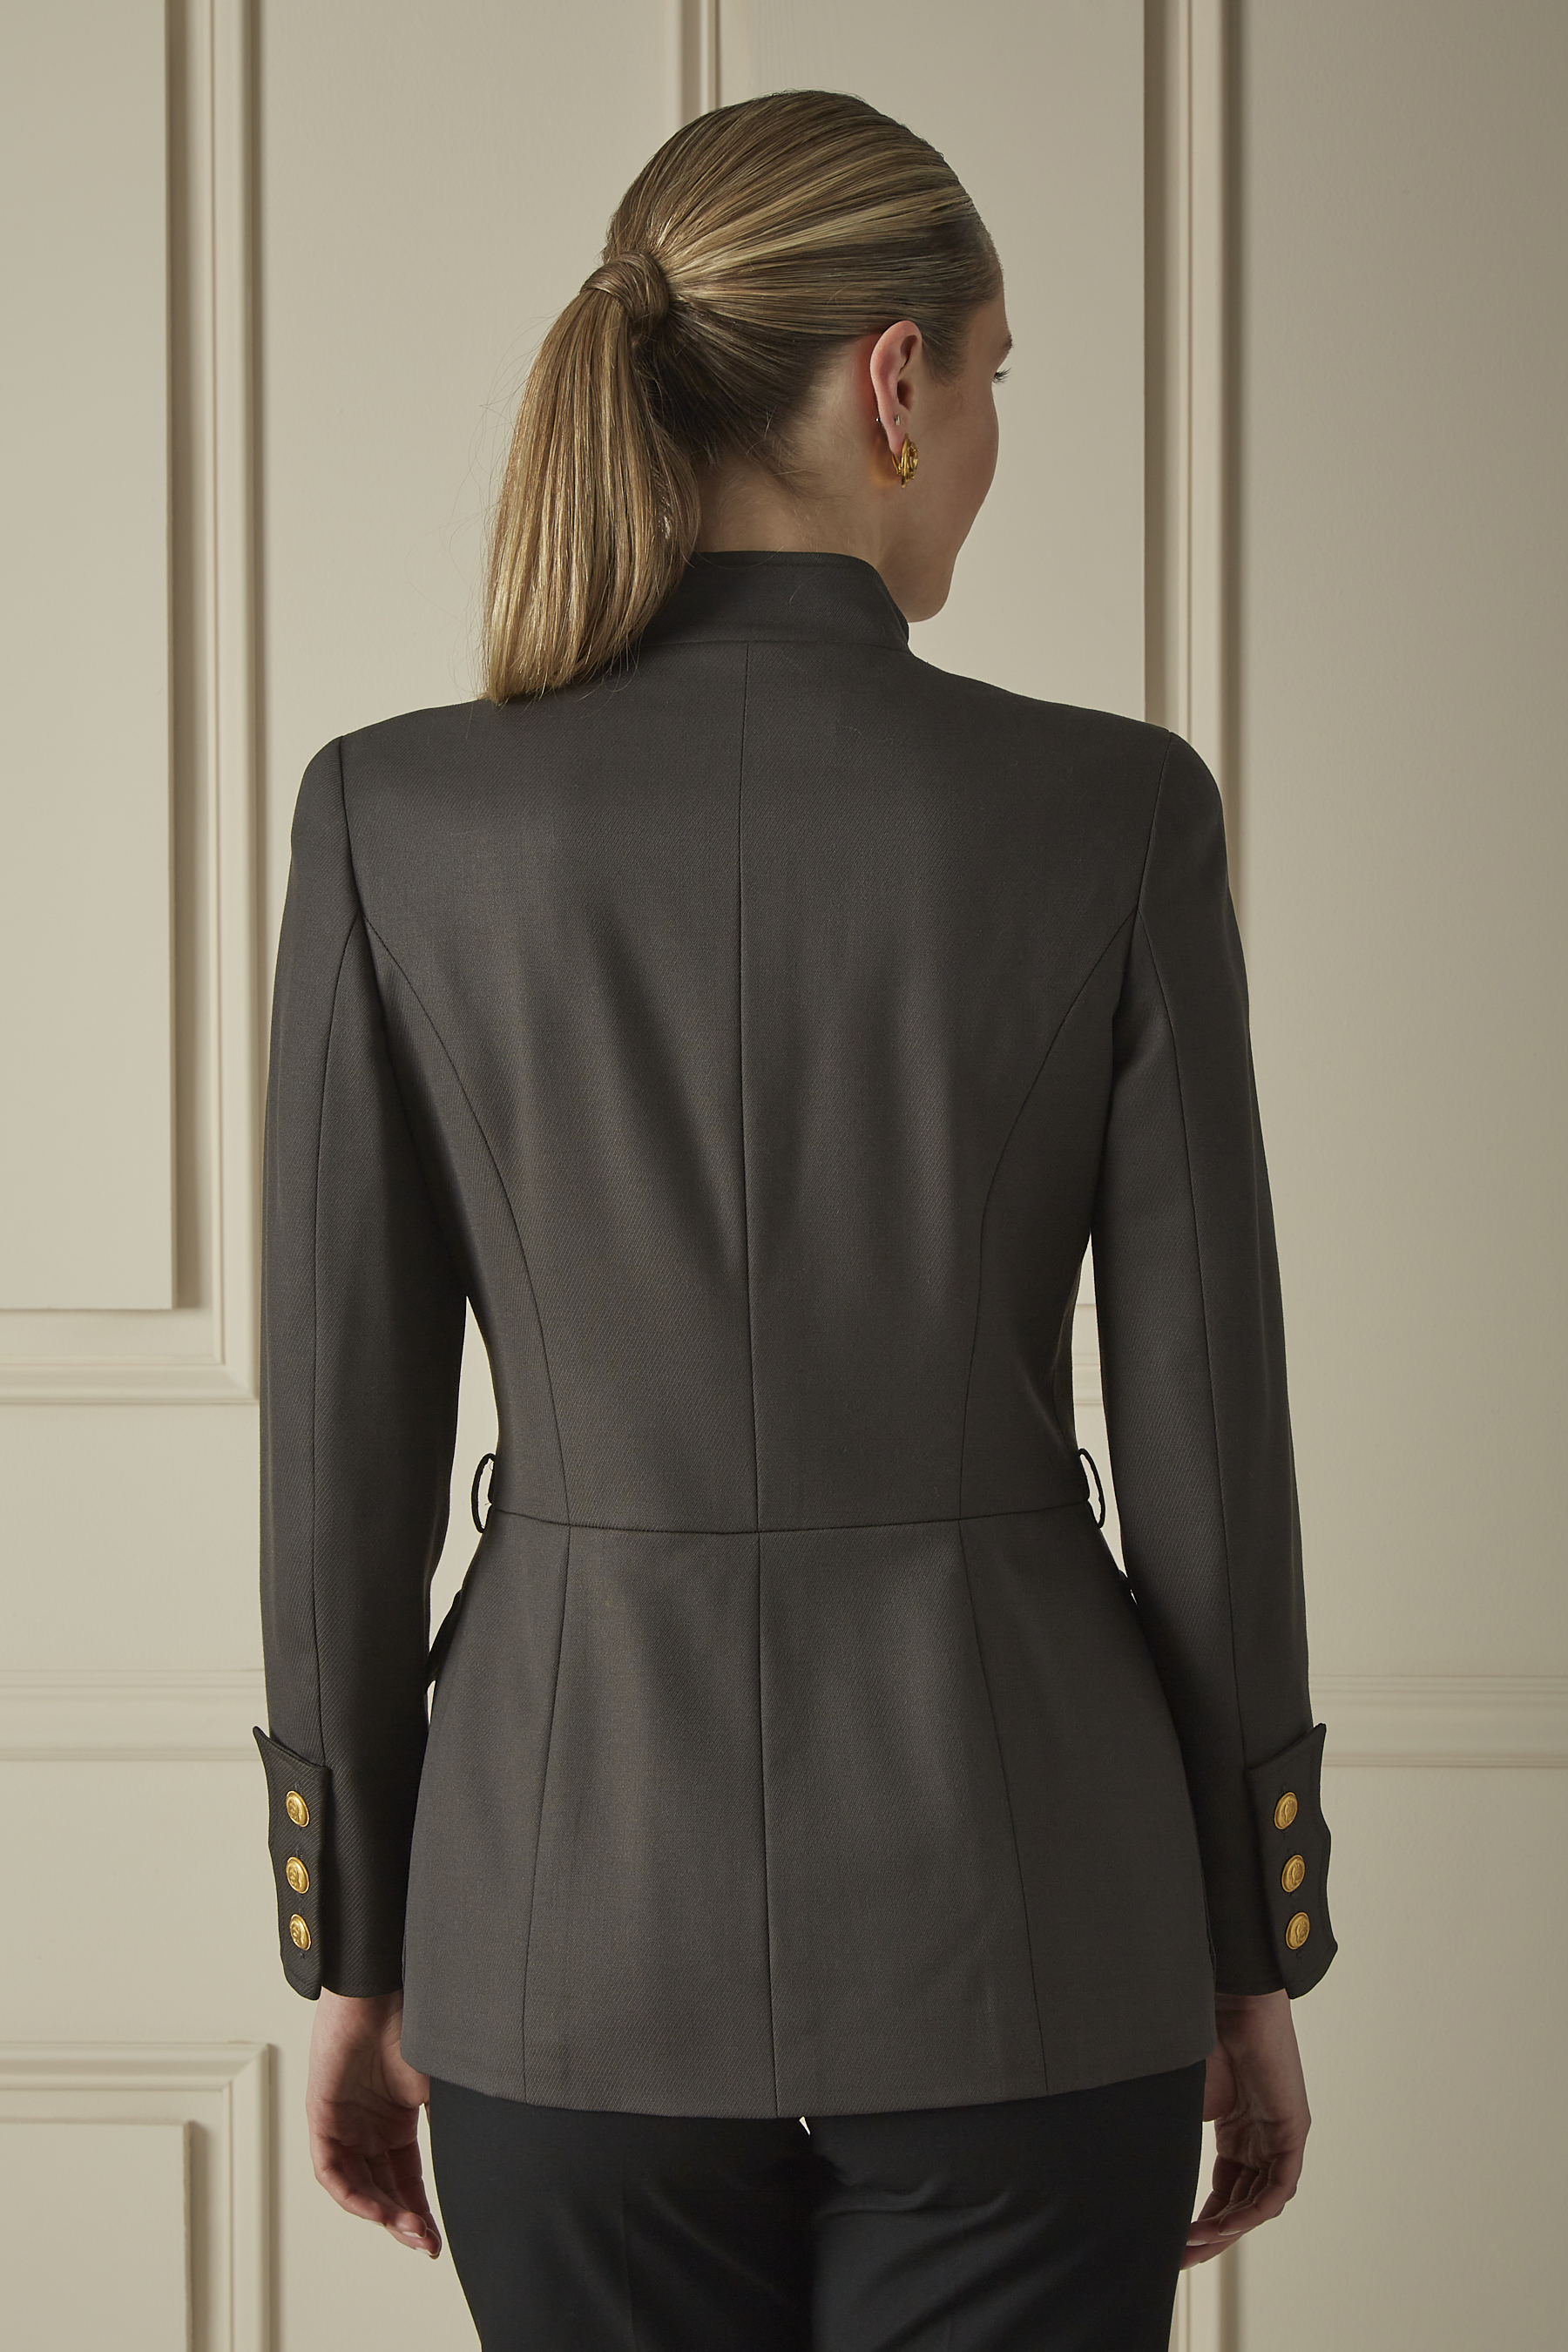 Chanel 04P tweed fringe four pocket jacket with yoke collar